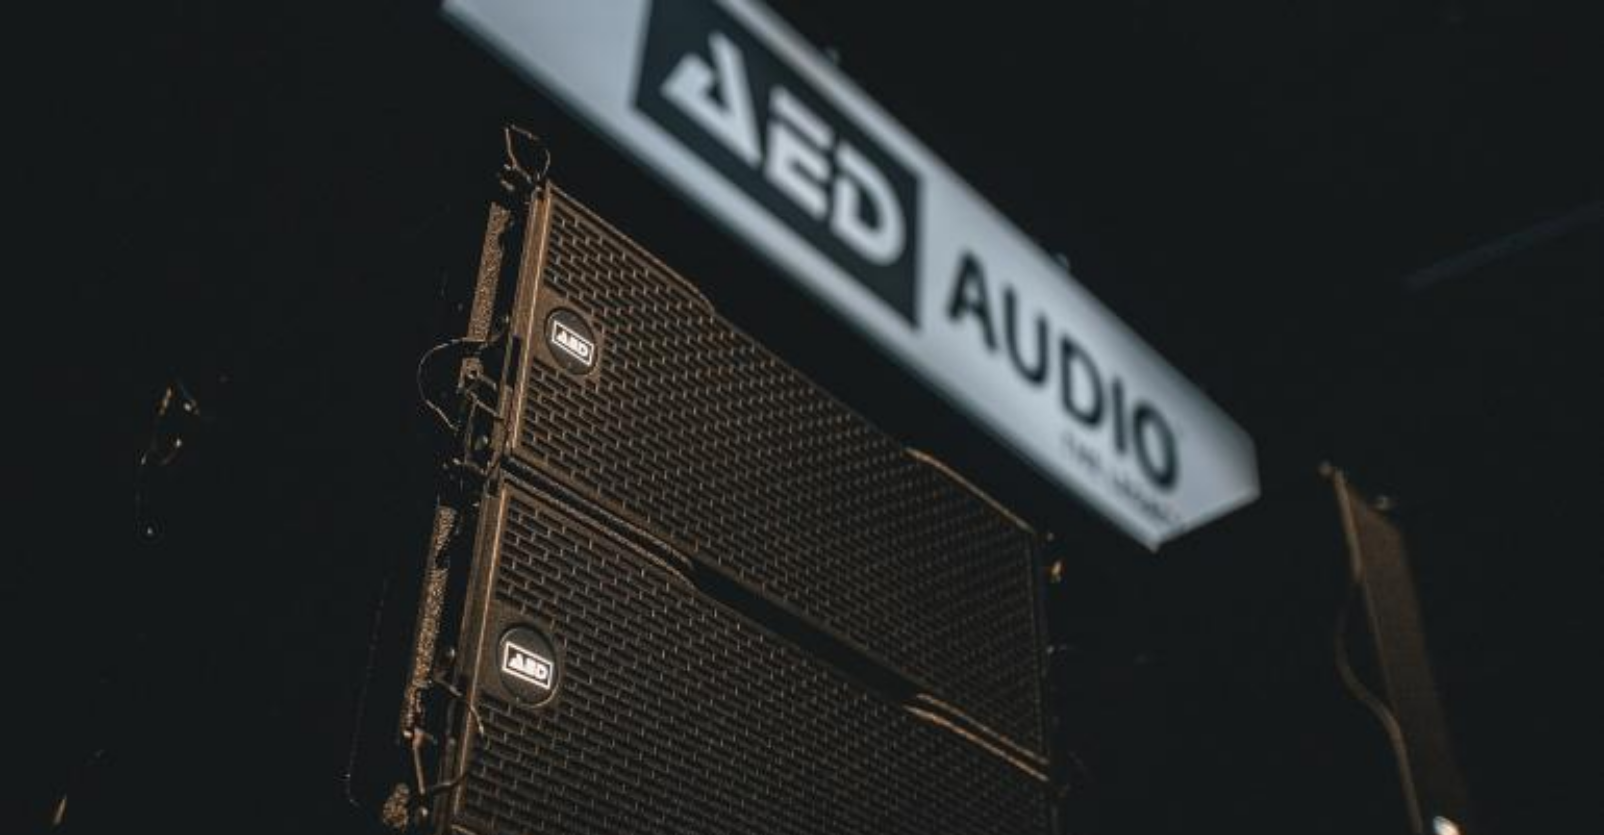 AED Audio